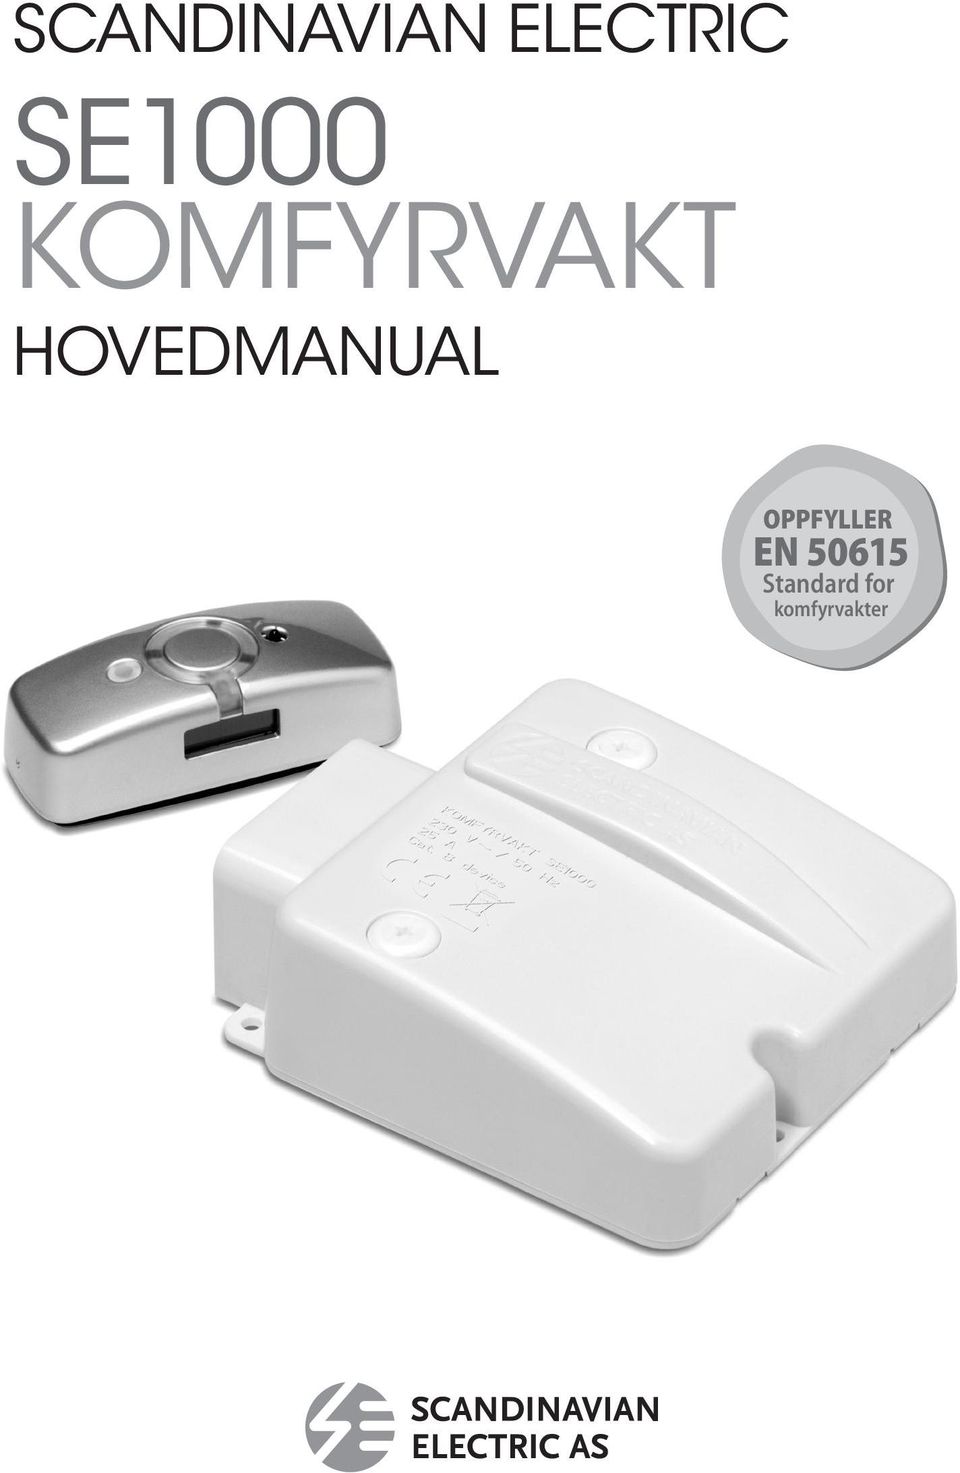 SE1000 KOMFYRVAKT HOVEDMANUAL - PDF Free Download